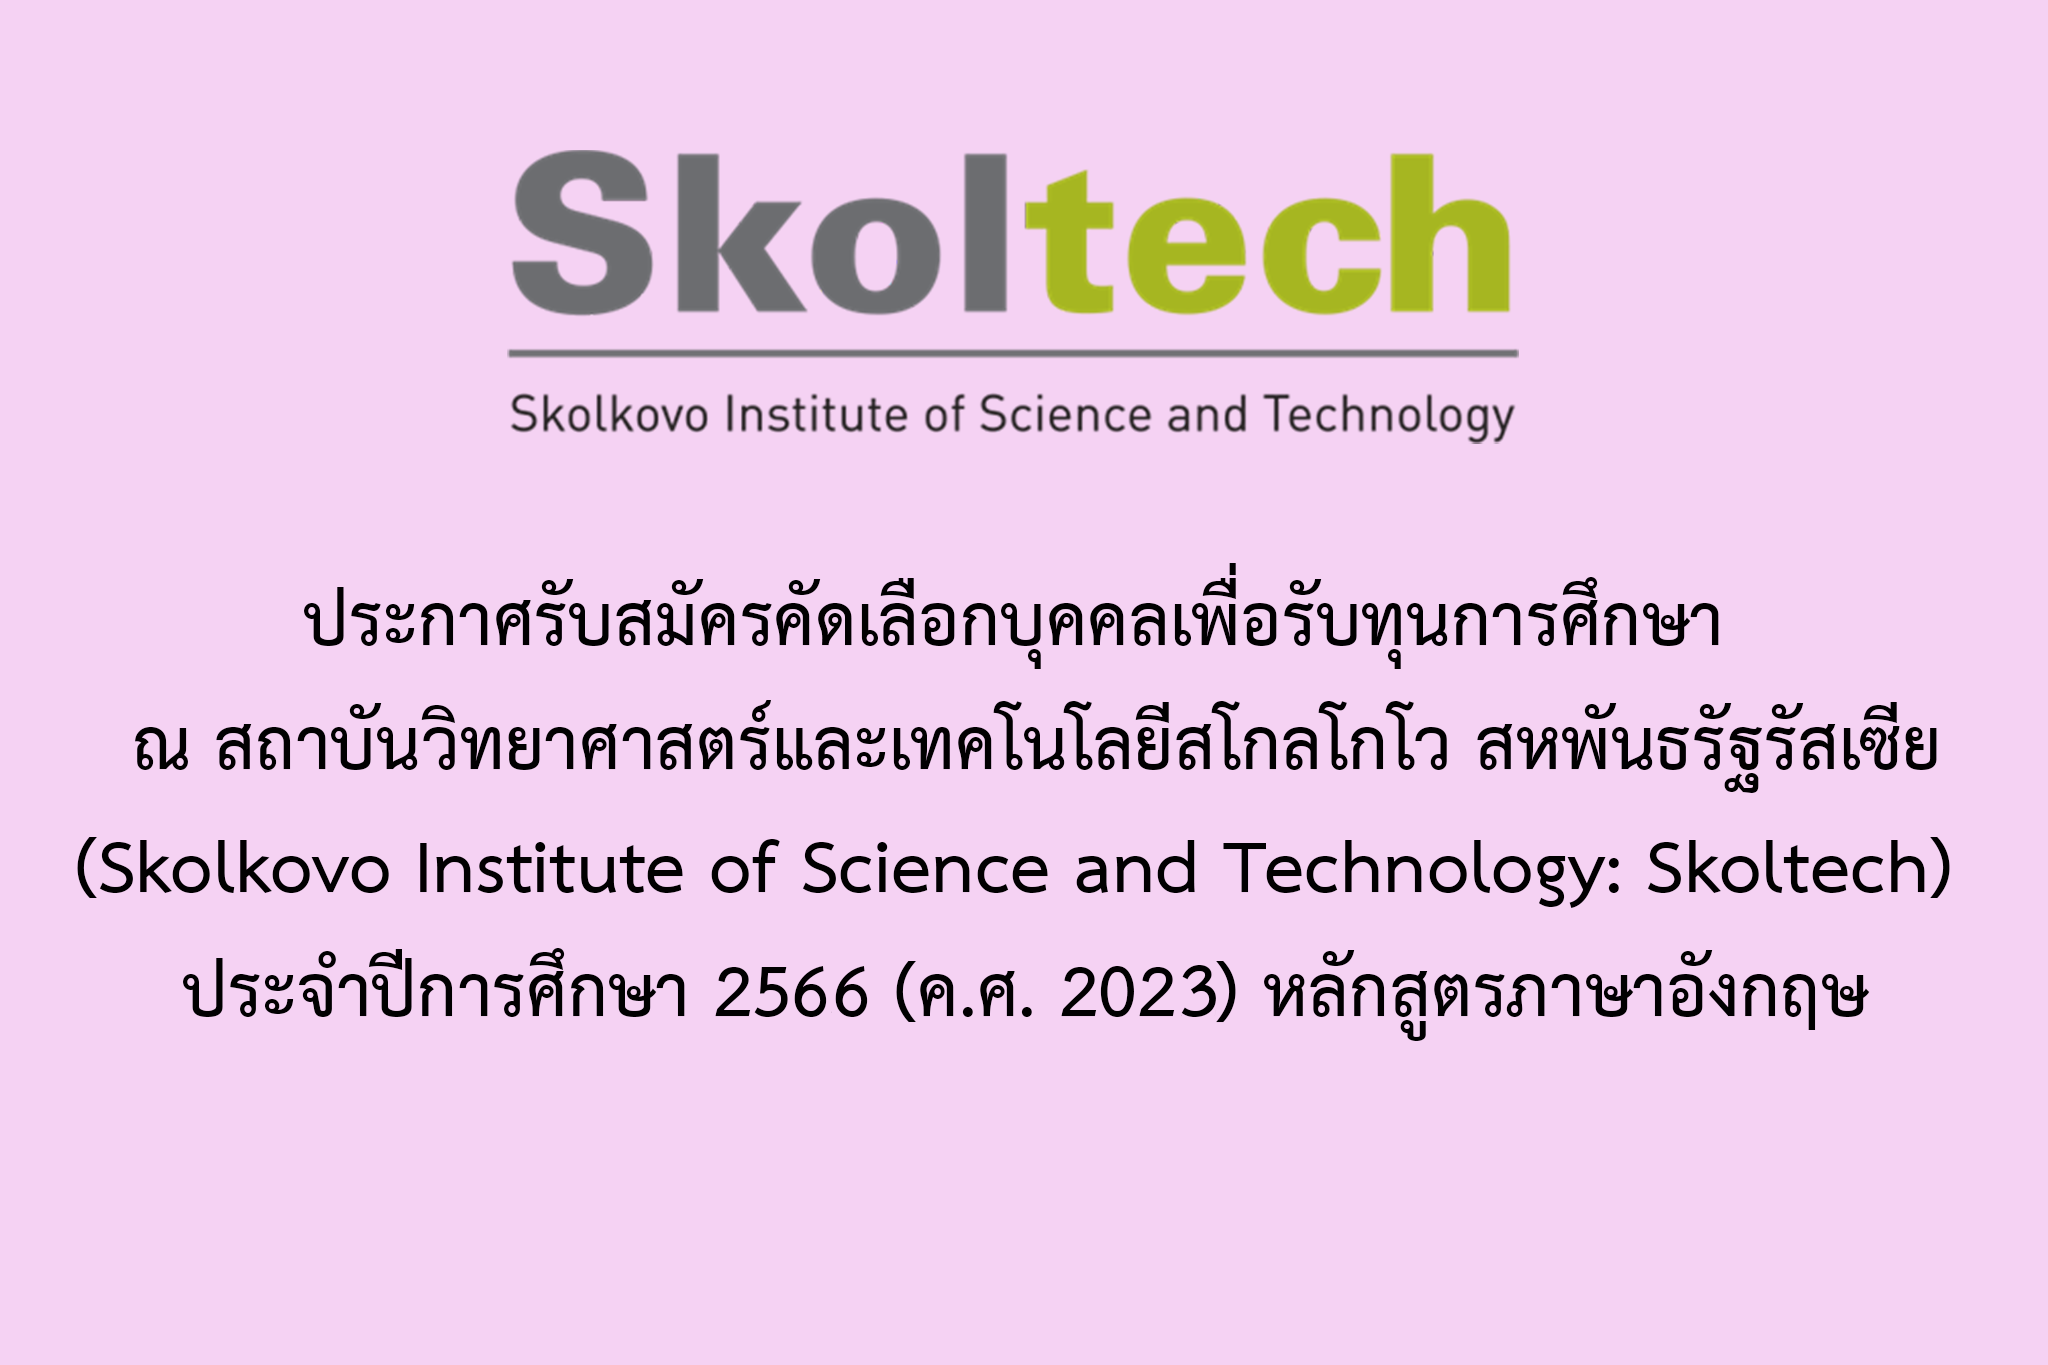 ประกาศรับสมัครคัดเลือกบุคคลเพื่อรับทุนการศึกษา ไปศึกษาวิชา ณ สถาบันวิทยาศาสตร์และเทคโนโลยีสโกลโกโว (Skolkovo Institute of Science and Technology: Skoltech) สหพันธรัฐรัสเซีย ประจำปีการศึกษา 2566 (ค.ศ. 2023) หลักสูตรภาษาอังกฤษ 